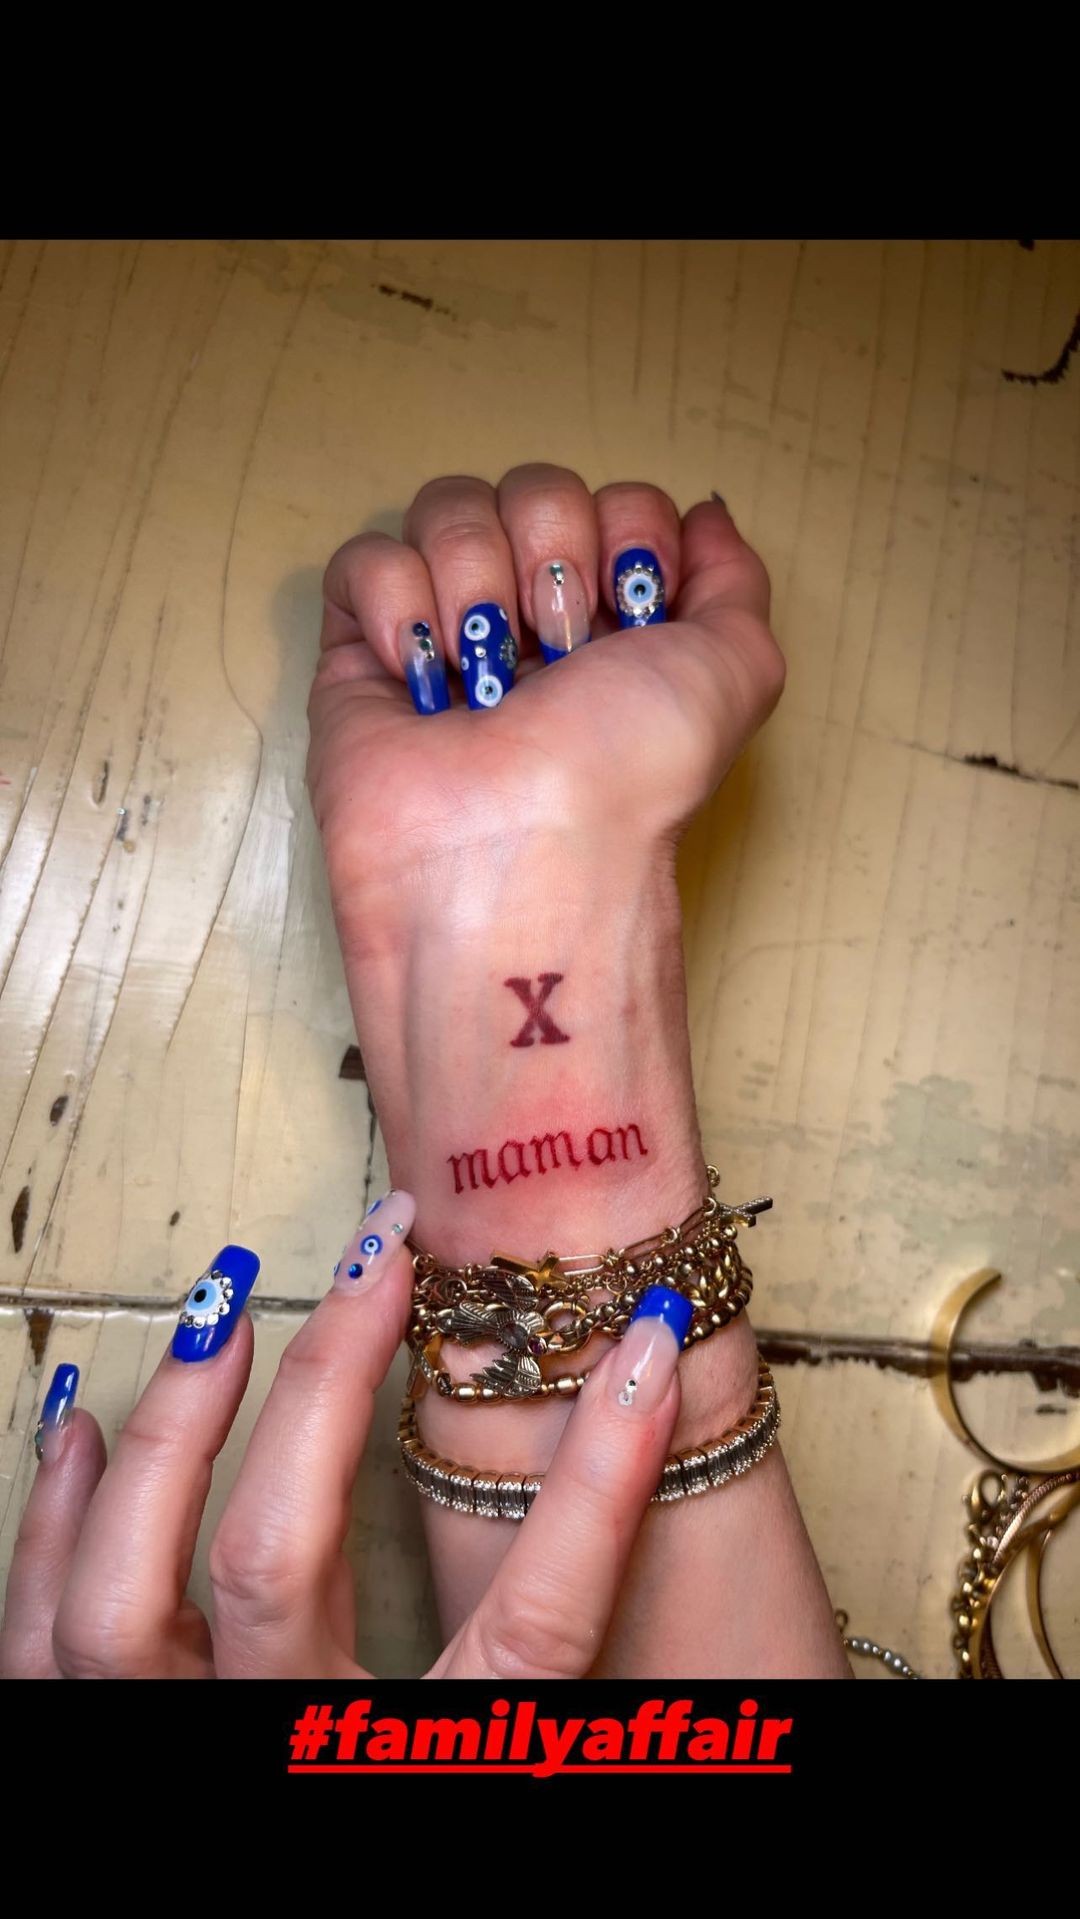 Madonna mostra novas tatuagens (Foto: Reprodução/Instagram)